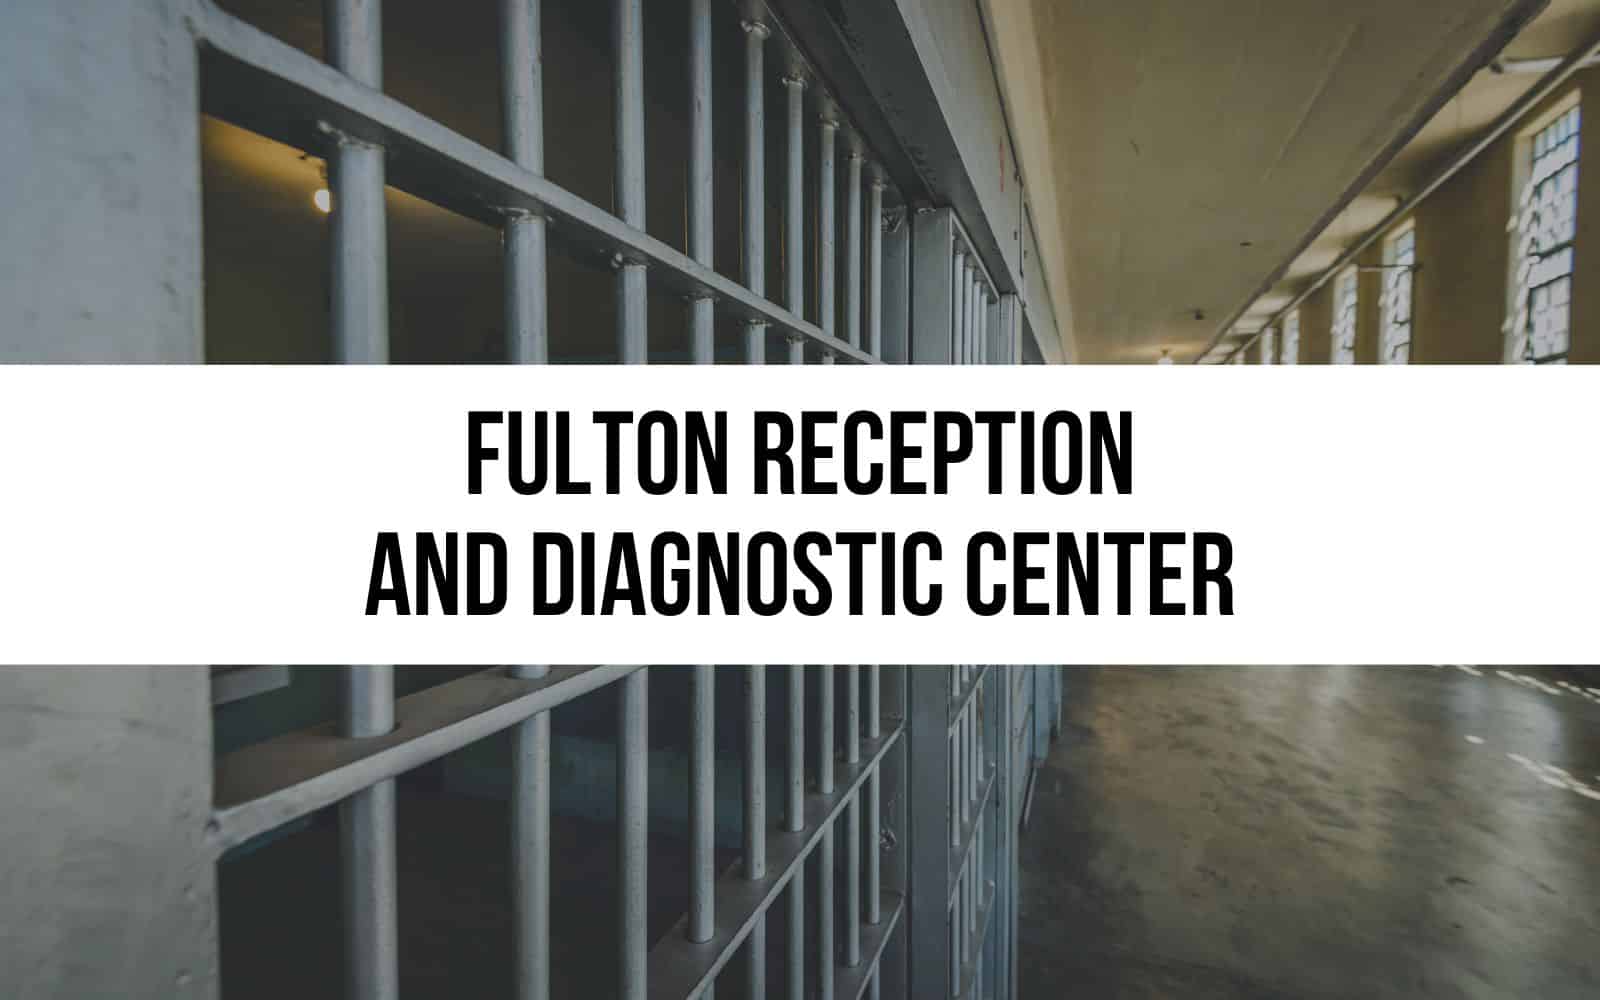 Fulton Reception and Diagnostic Center